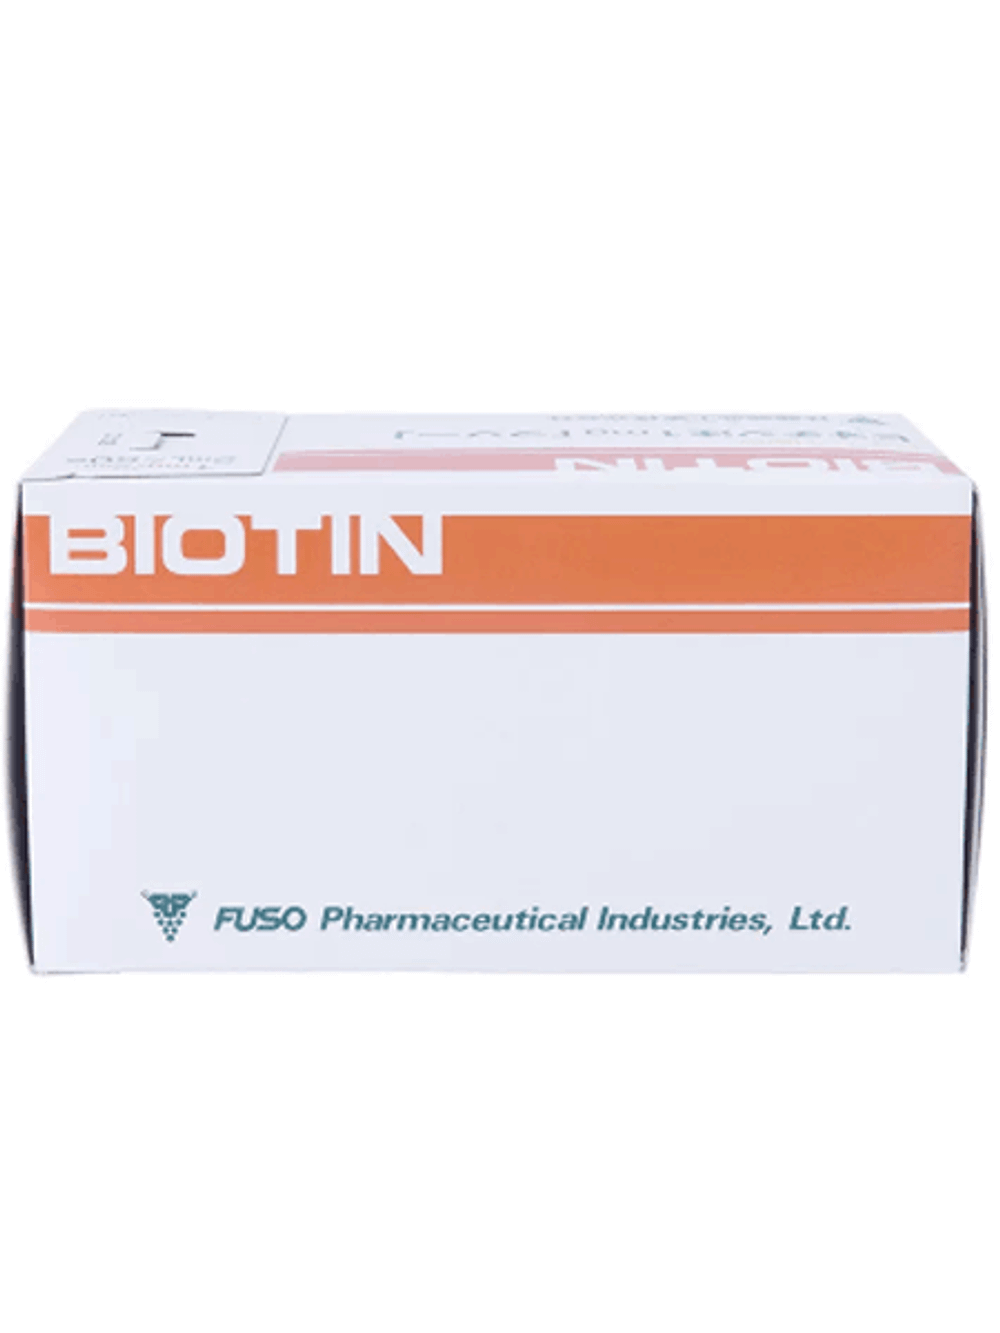 Биотин для инъекций 1 мг. 2 мл. (Фусо) (Витамин H)  50 амп.